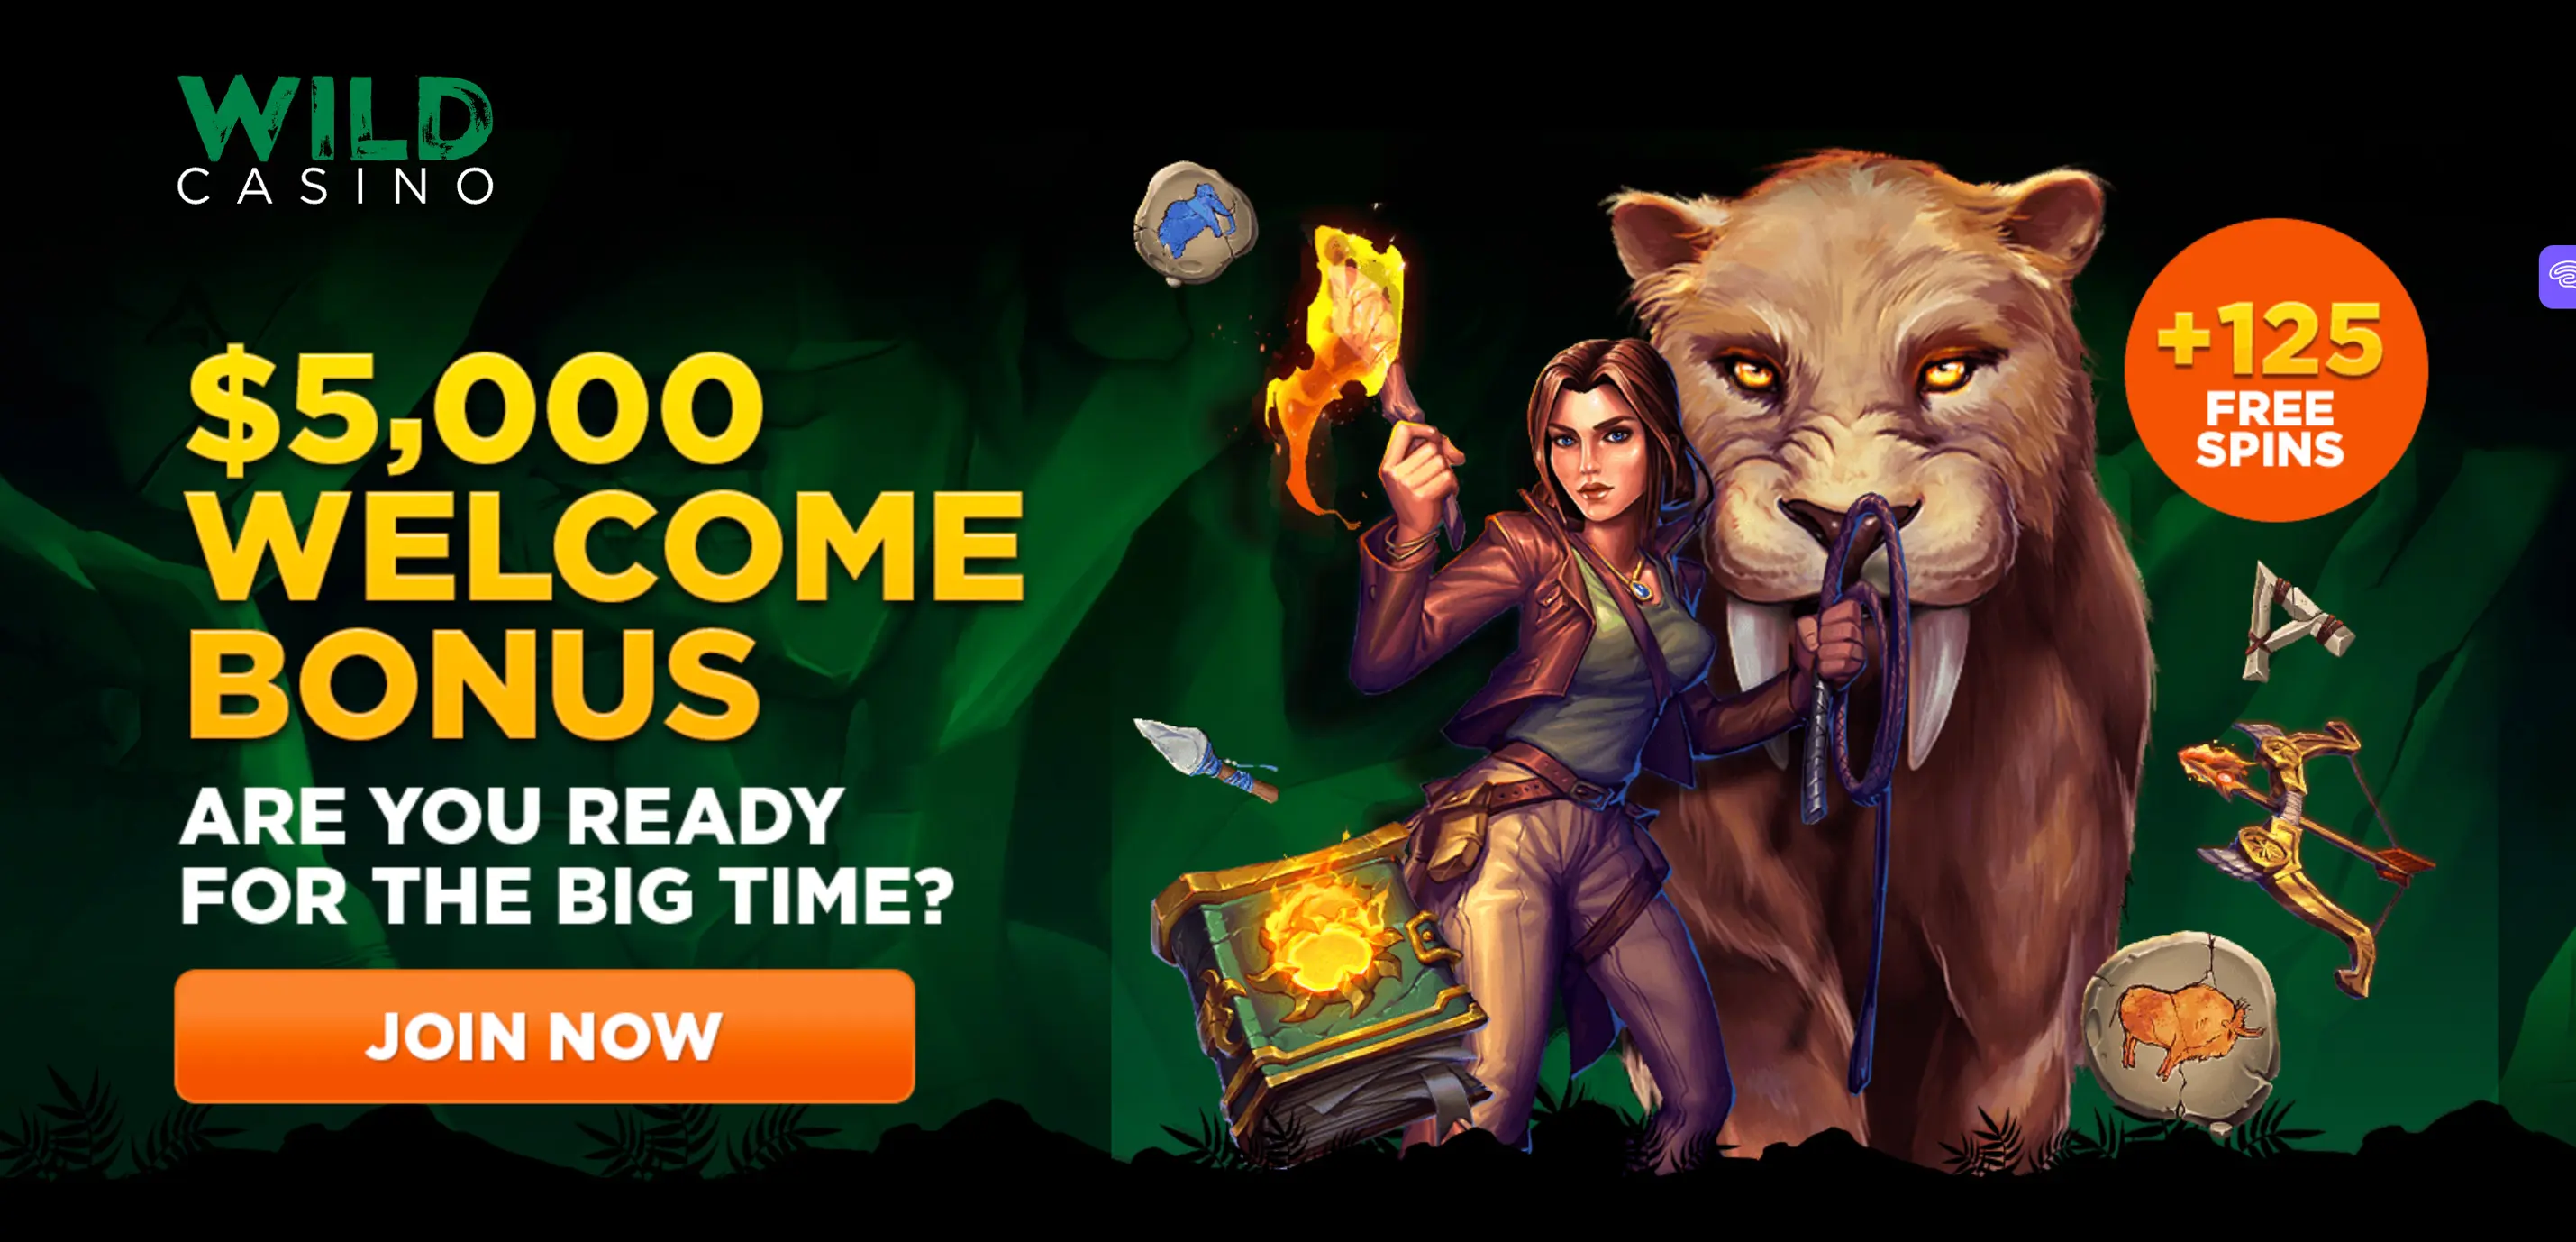 Wild Casino Online Casino Bonus